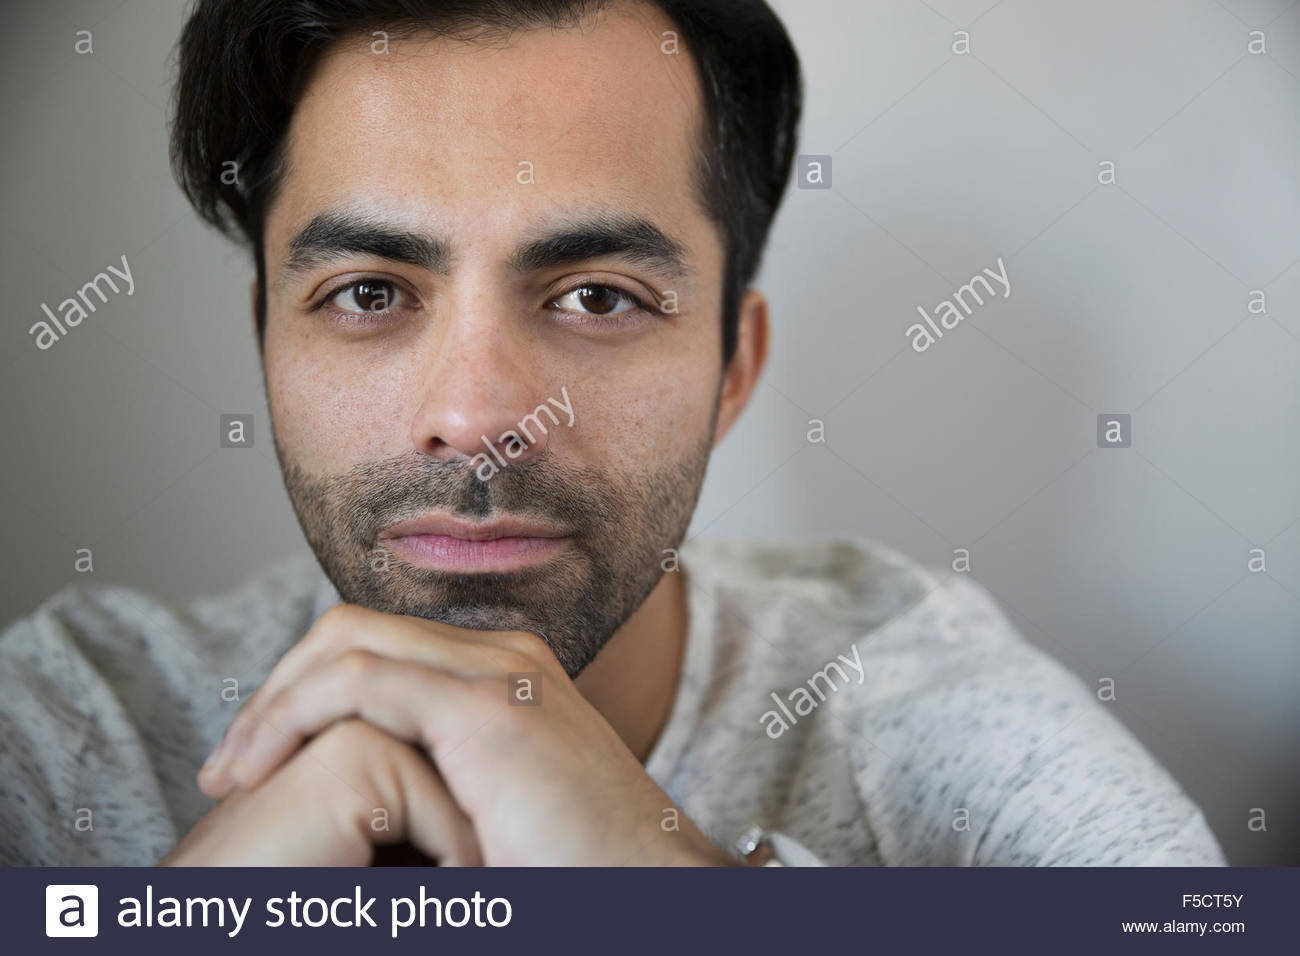 Retrato hombre serio con pelo negro y rastrojo Foto de stock